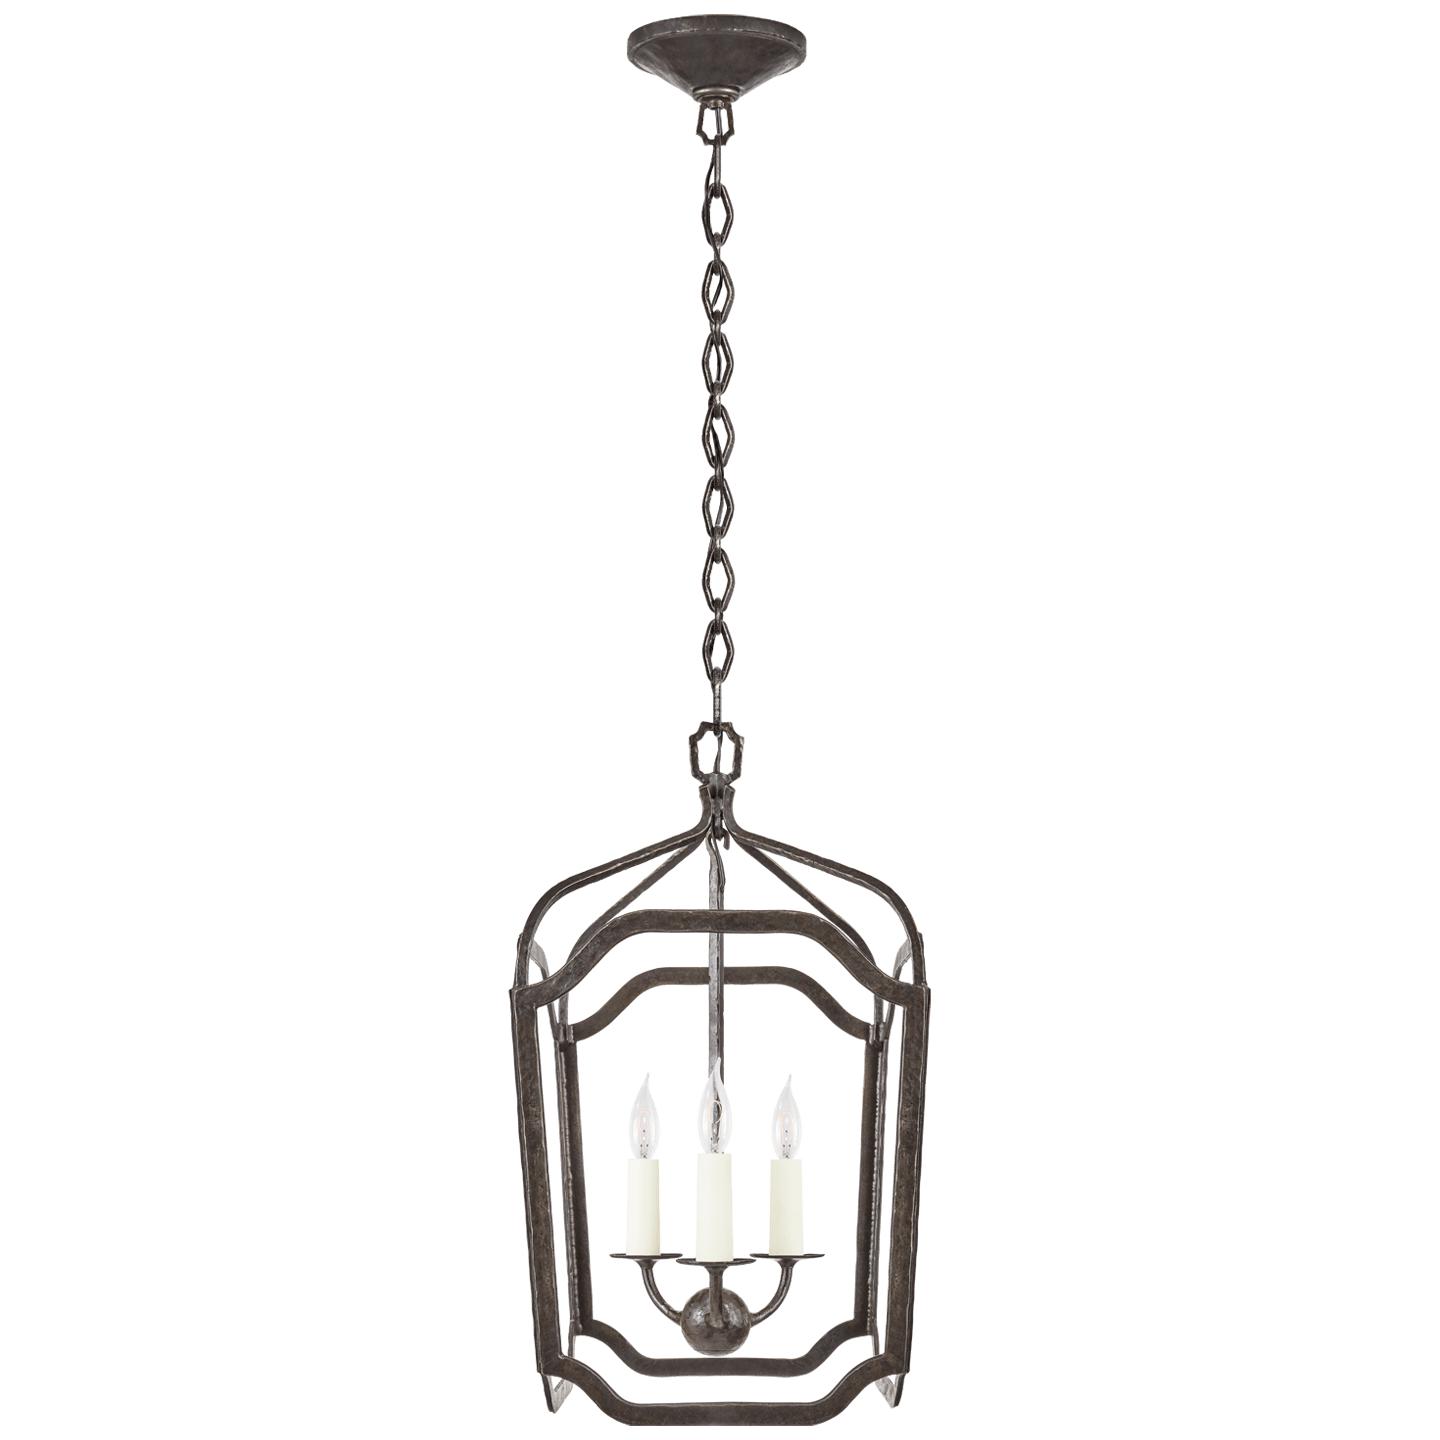 Купить Подвесной светильник Ancaster Small Blacksmith Lantern в интернет-магазине roooms.ru